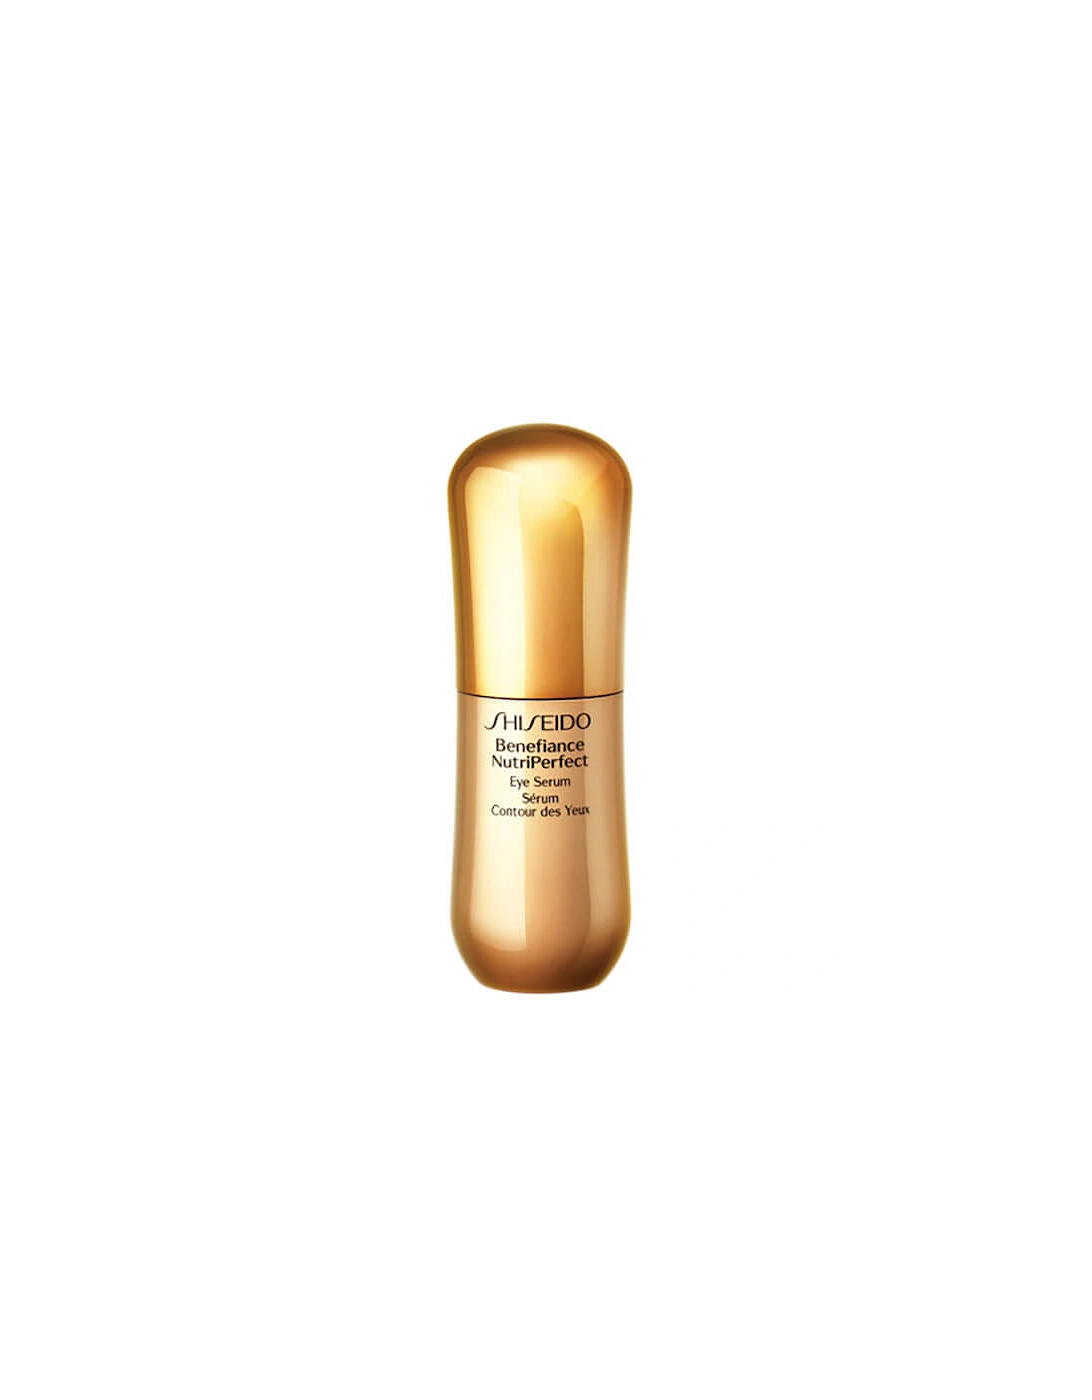 Benefiance NutriPerfect Eye Serum (15ml) - Shiseido, 2 of 1